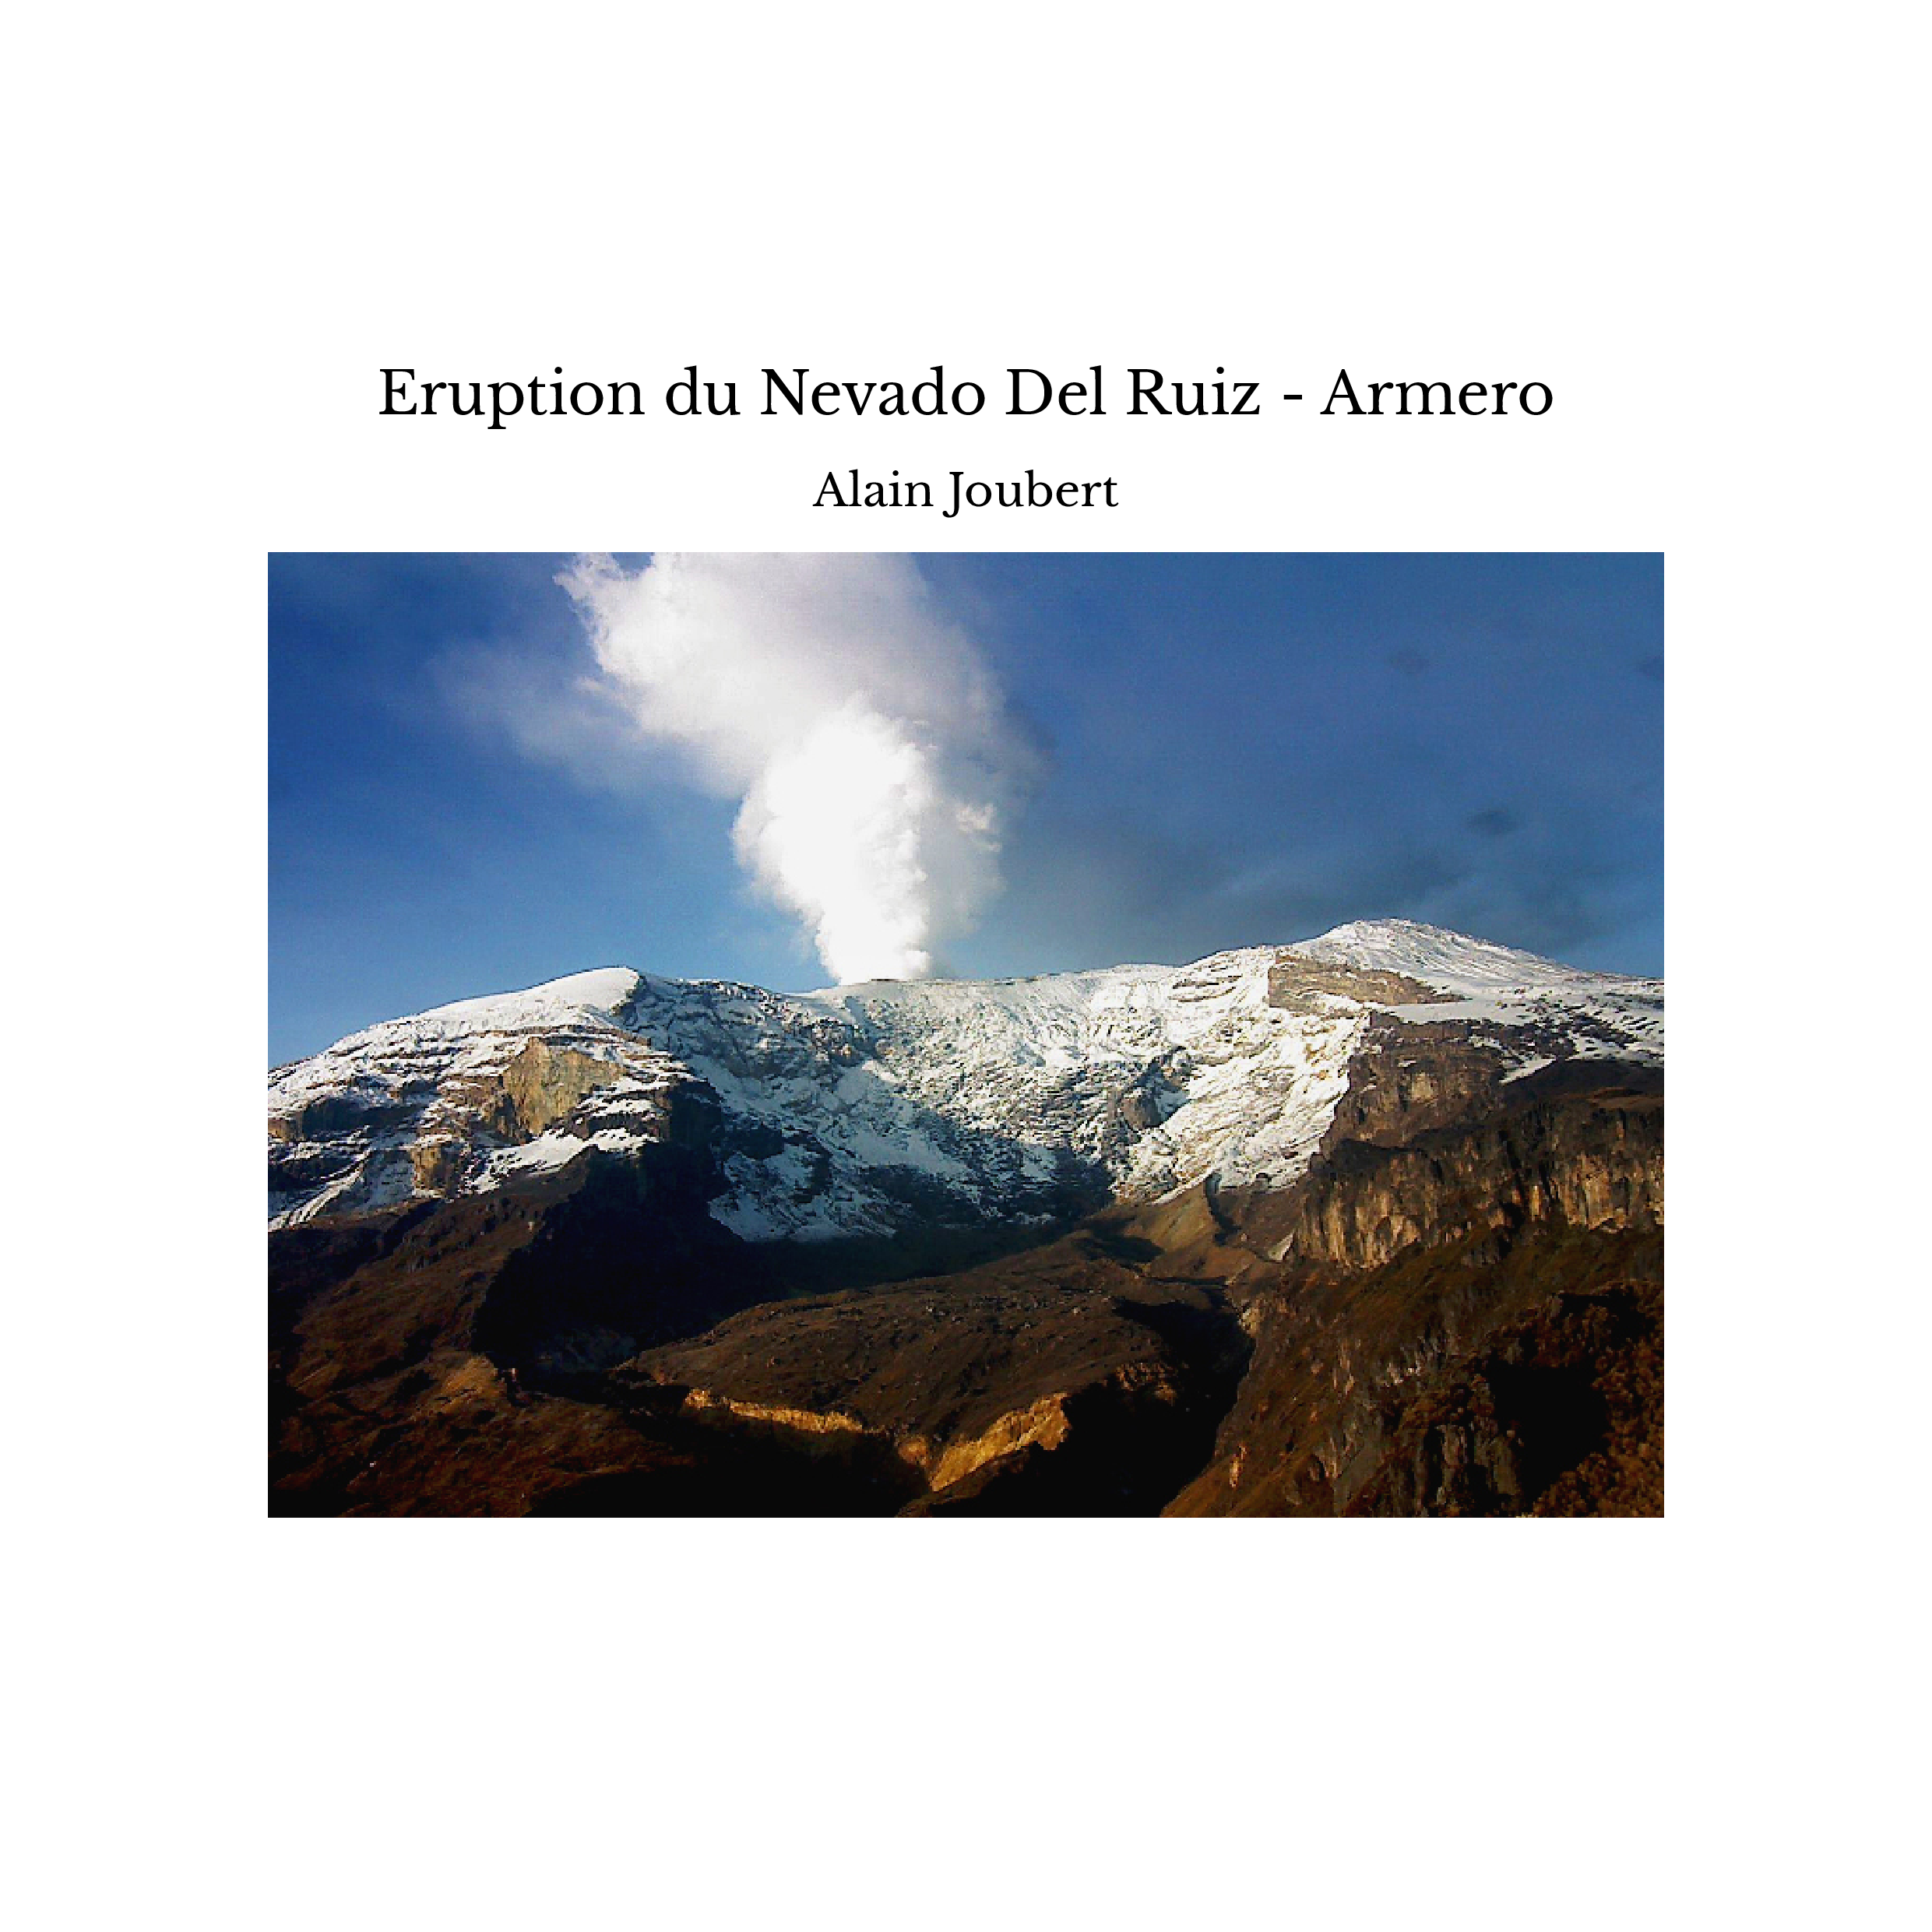 Eruption du Nevado Del Ruiz - Armero